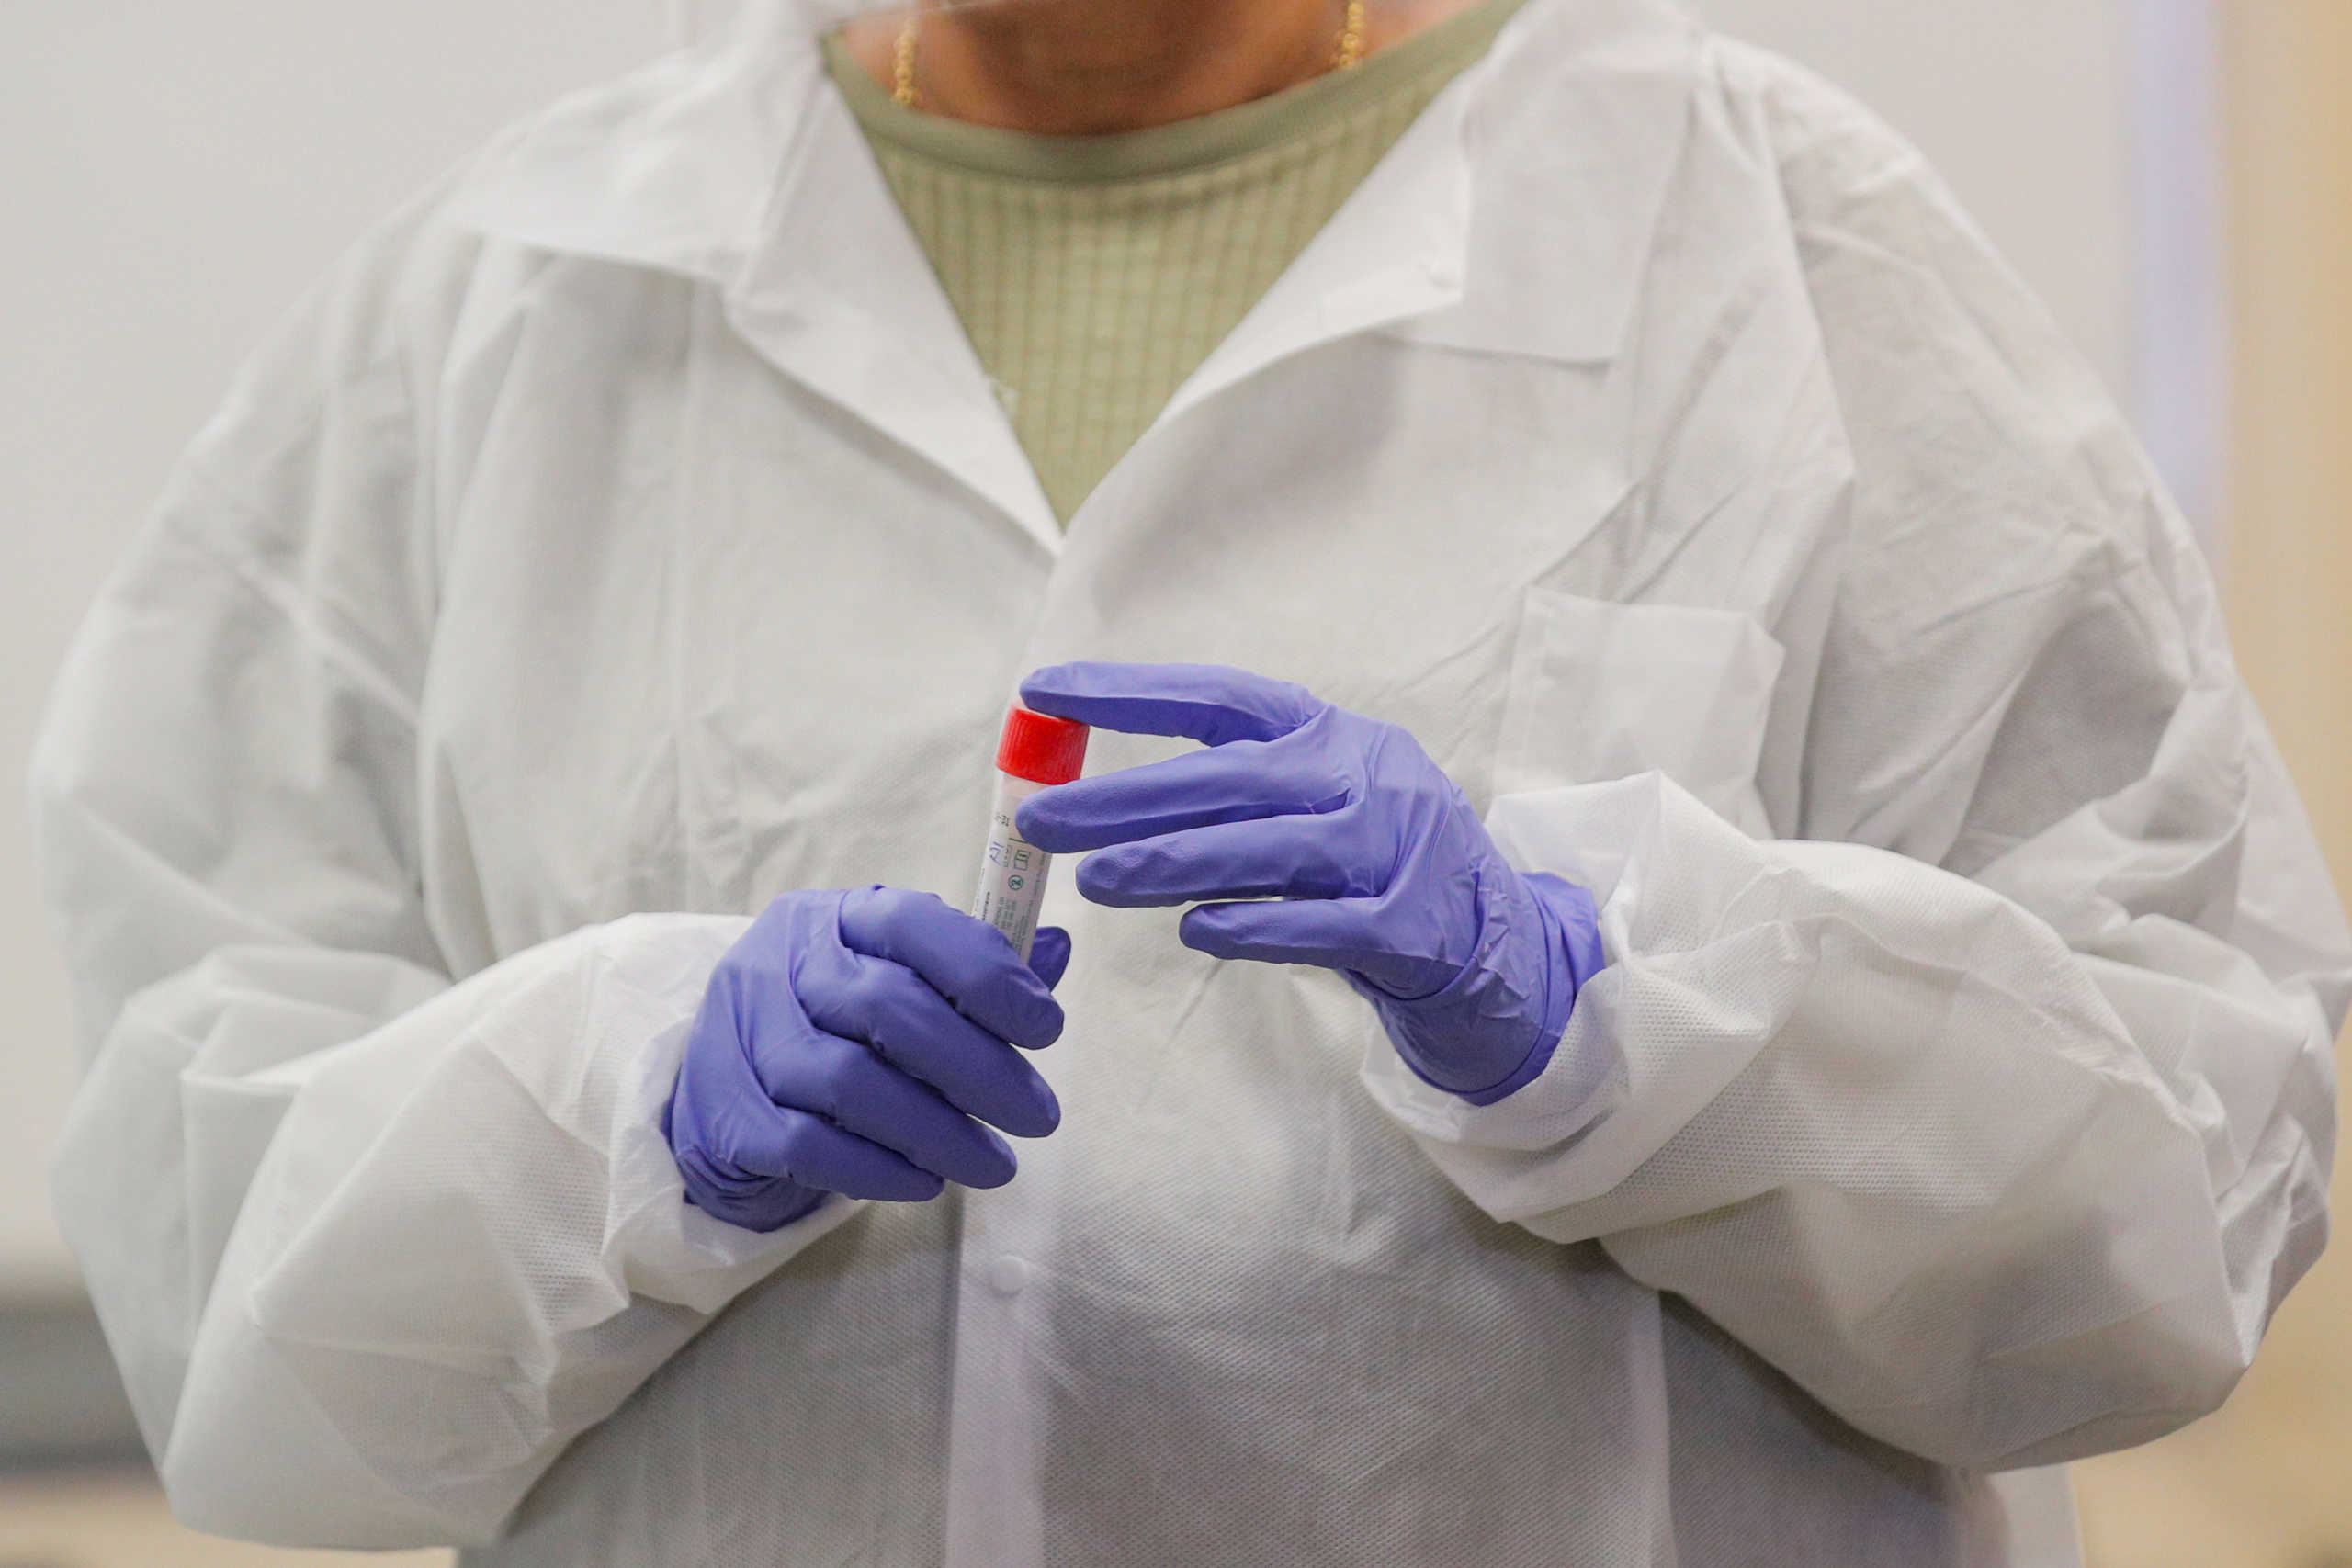 ΕΑΠ: Δωρεά διαγνωστικών τεστ κορονοϊού σε πανεπιστημιακά μικροβιολογικά εργαστήρια